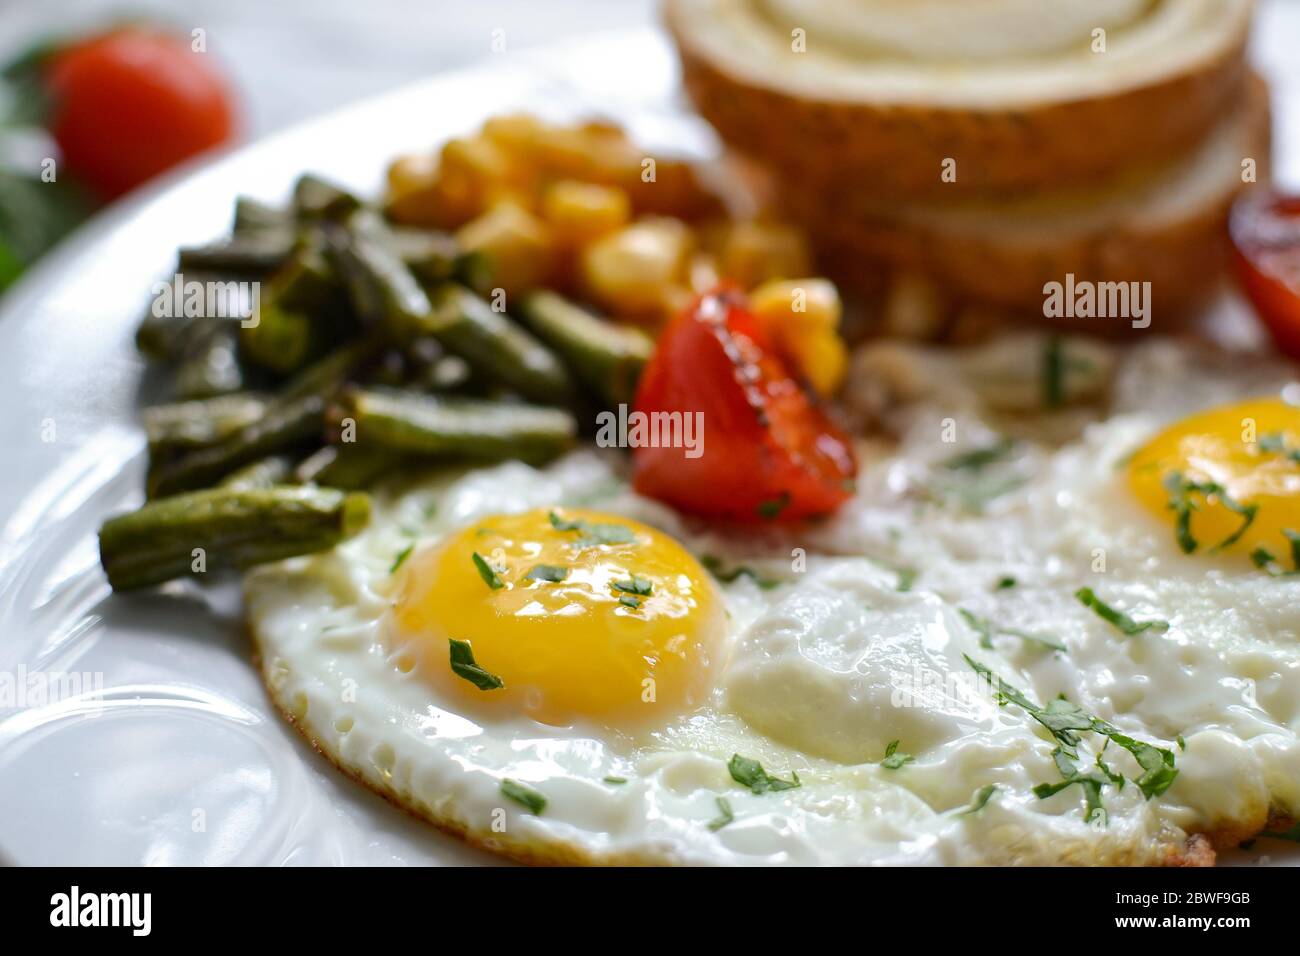 Uova fritte con pomodori, fagioli verdi, mais e pane tostato. Colazione inglese vegetariana. Primo piano con caffè e uova fritte. Foto Stock